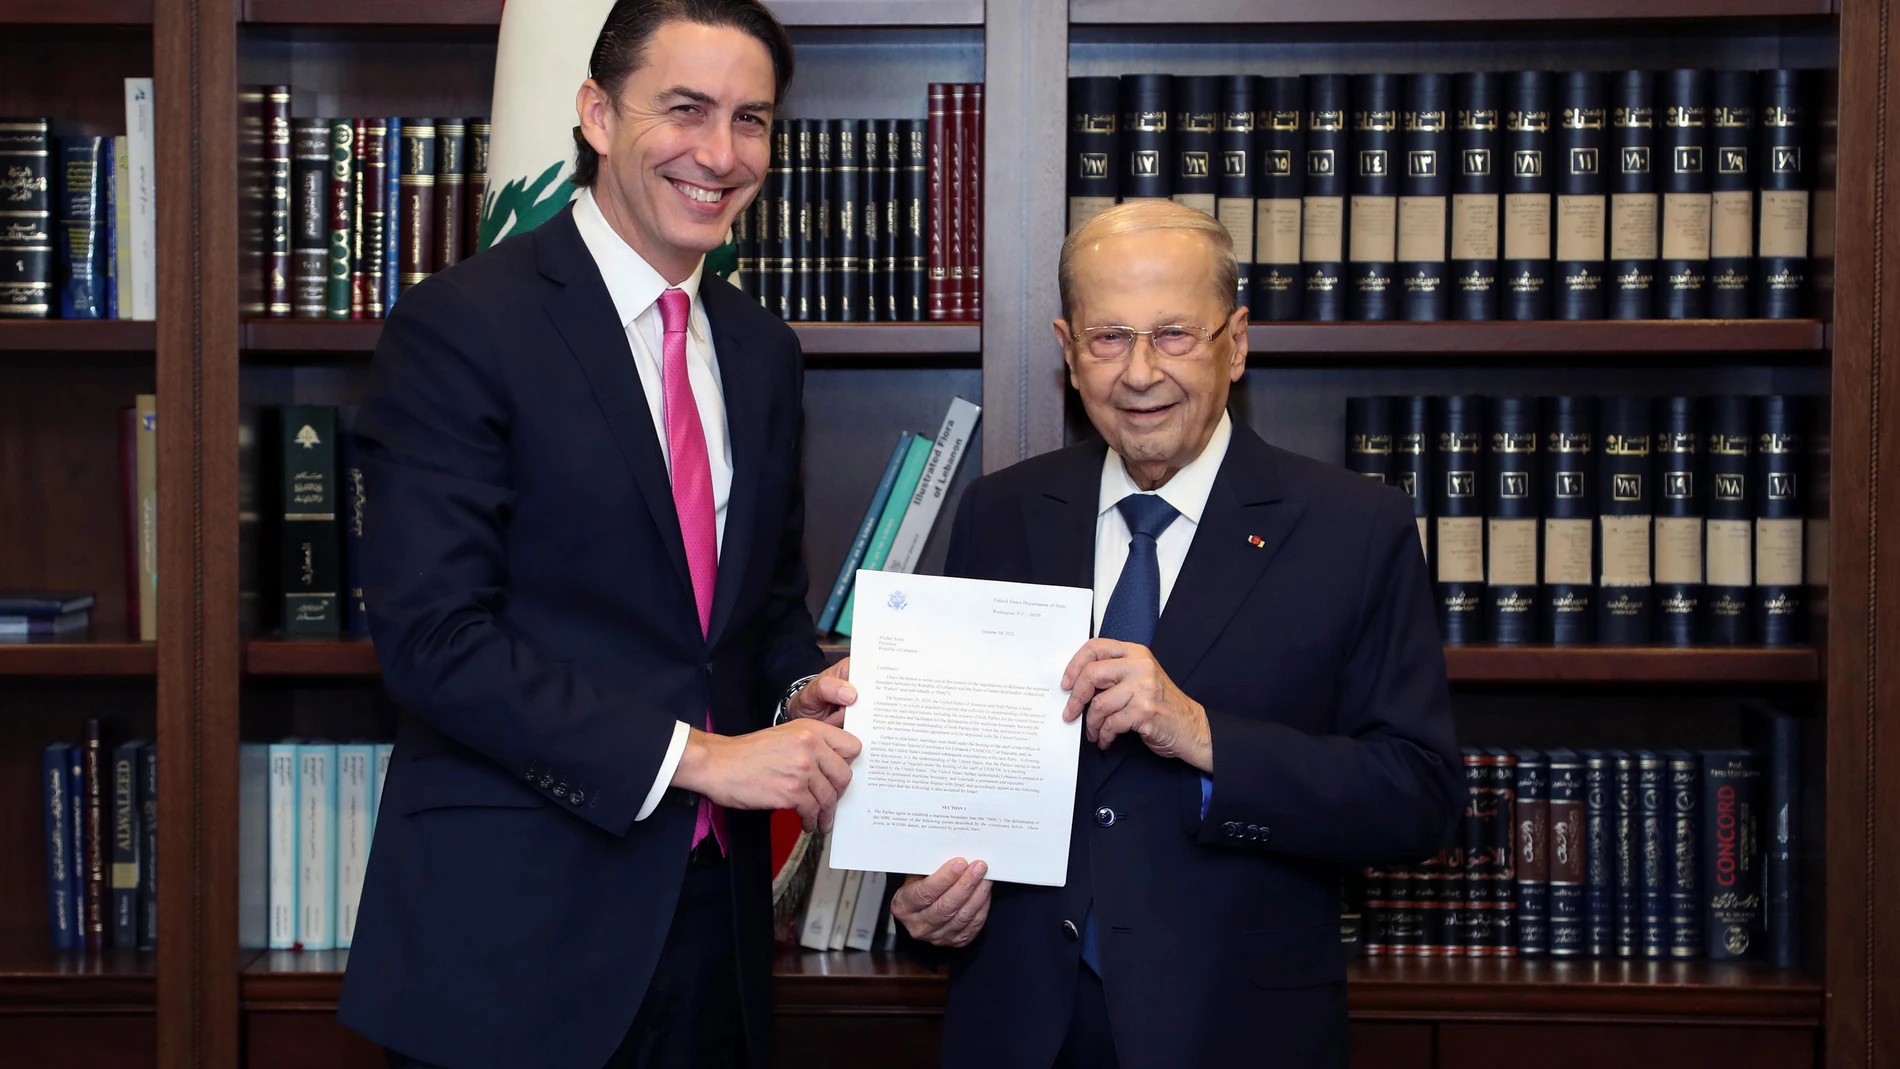 Fotografía facilitada por el Gobierno libanés muestra al presidente de Líbano, Michel Aoun (derecha) y al asesor principal de Estados Unidos para la seguridad energética, Amos Hochstein (izquierda), posando para una foto mientras llevan una carta de acuerdo en el Palacio Presidencial en Baabda, al este de Beirut, Líbano